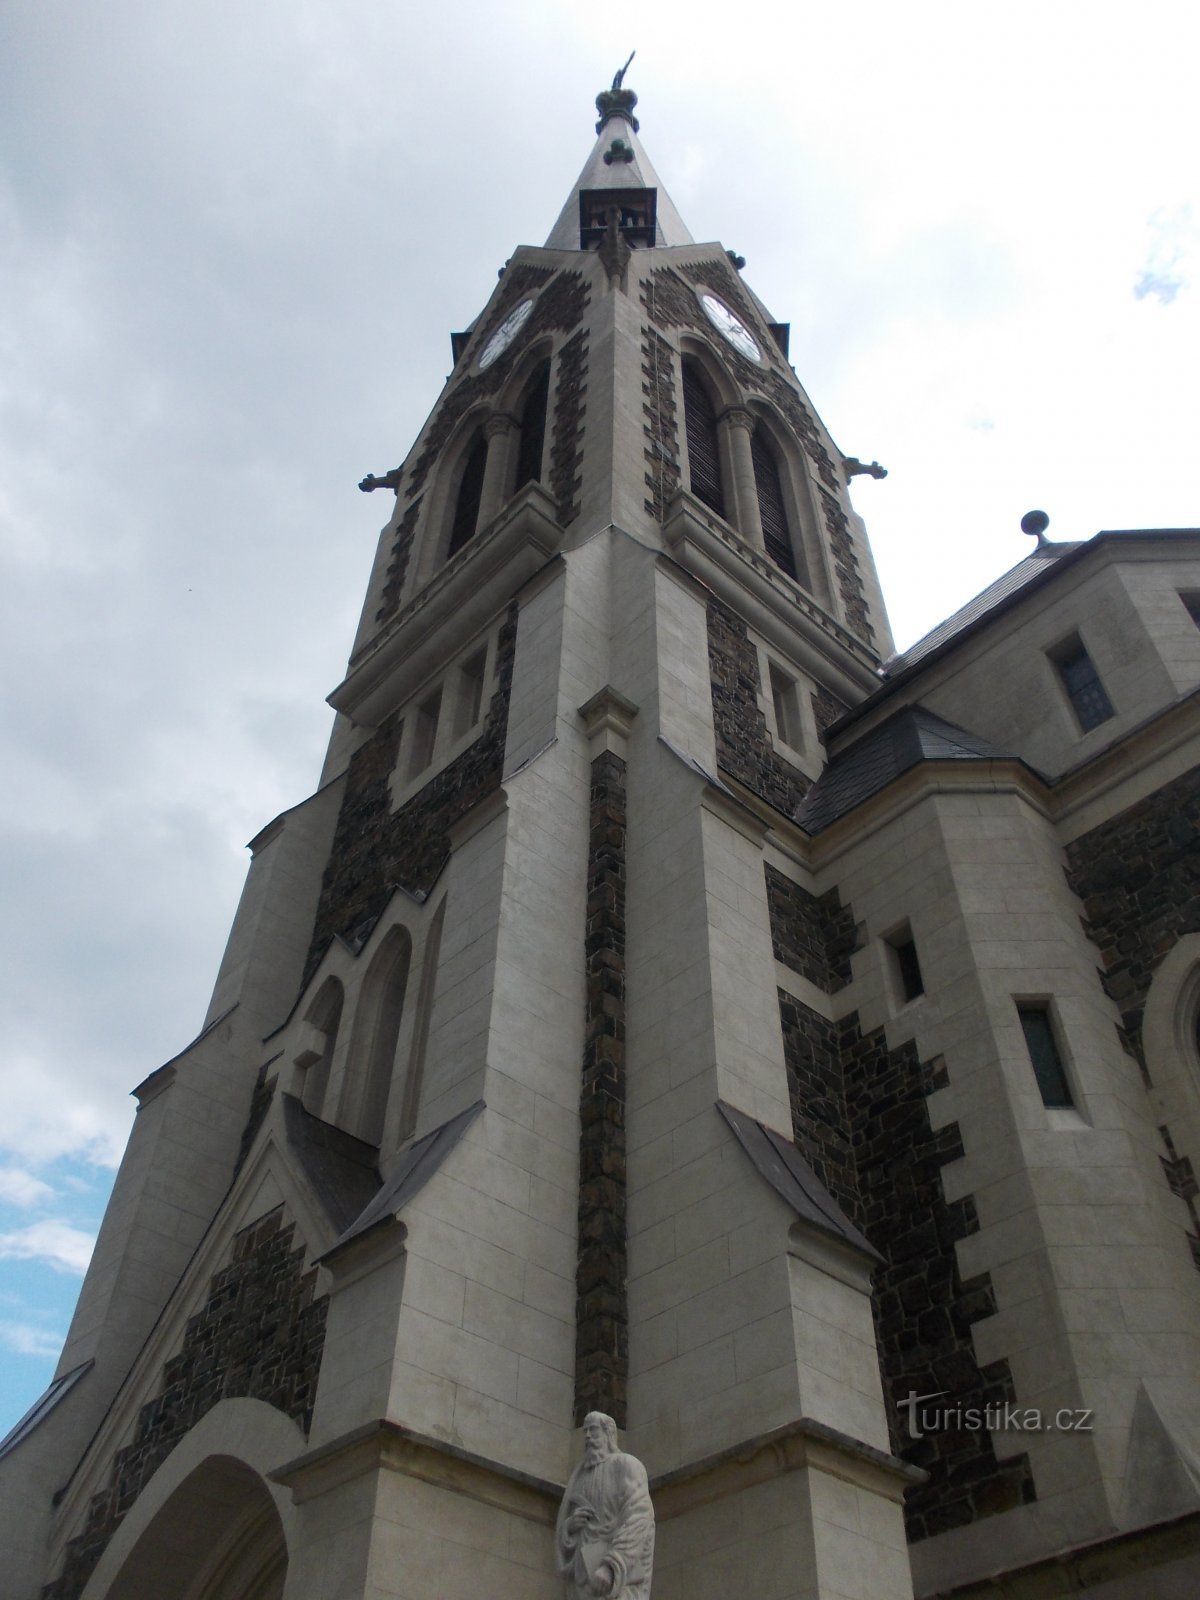 教会の塔